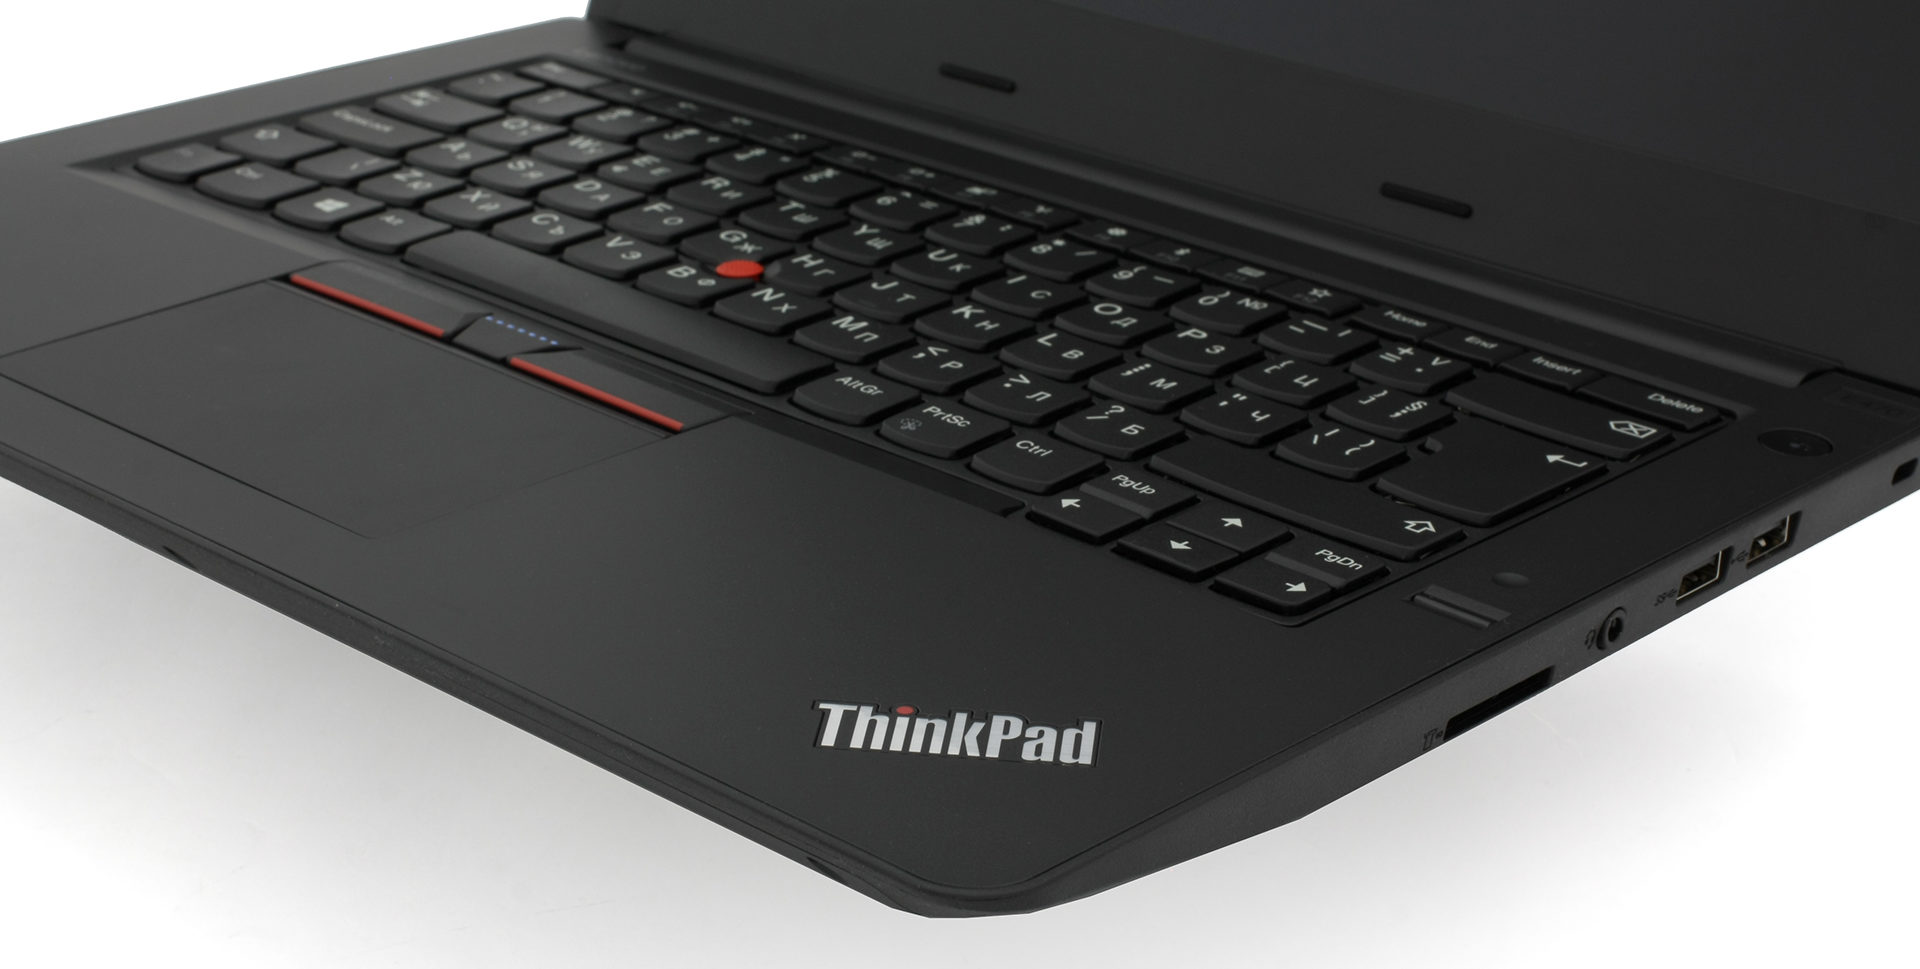 Lenovo ThinkPad E470 [Specs and Benchmarks] - LaptopMedia.com